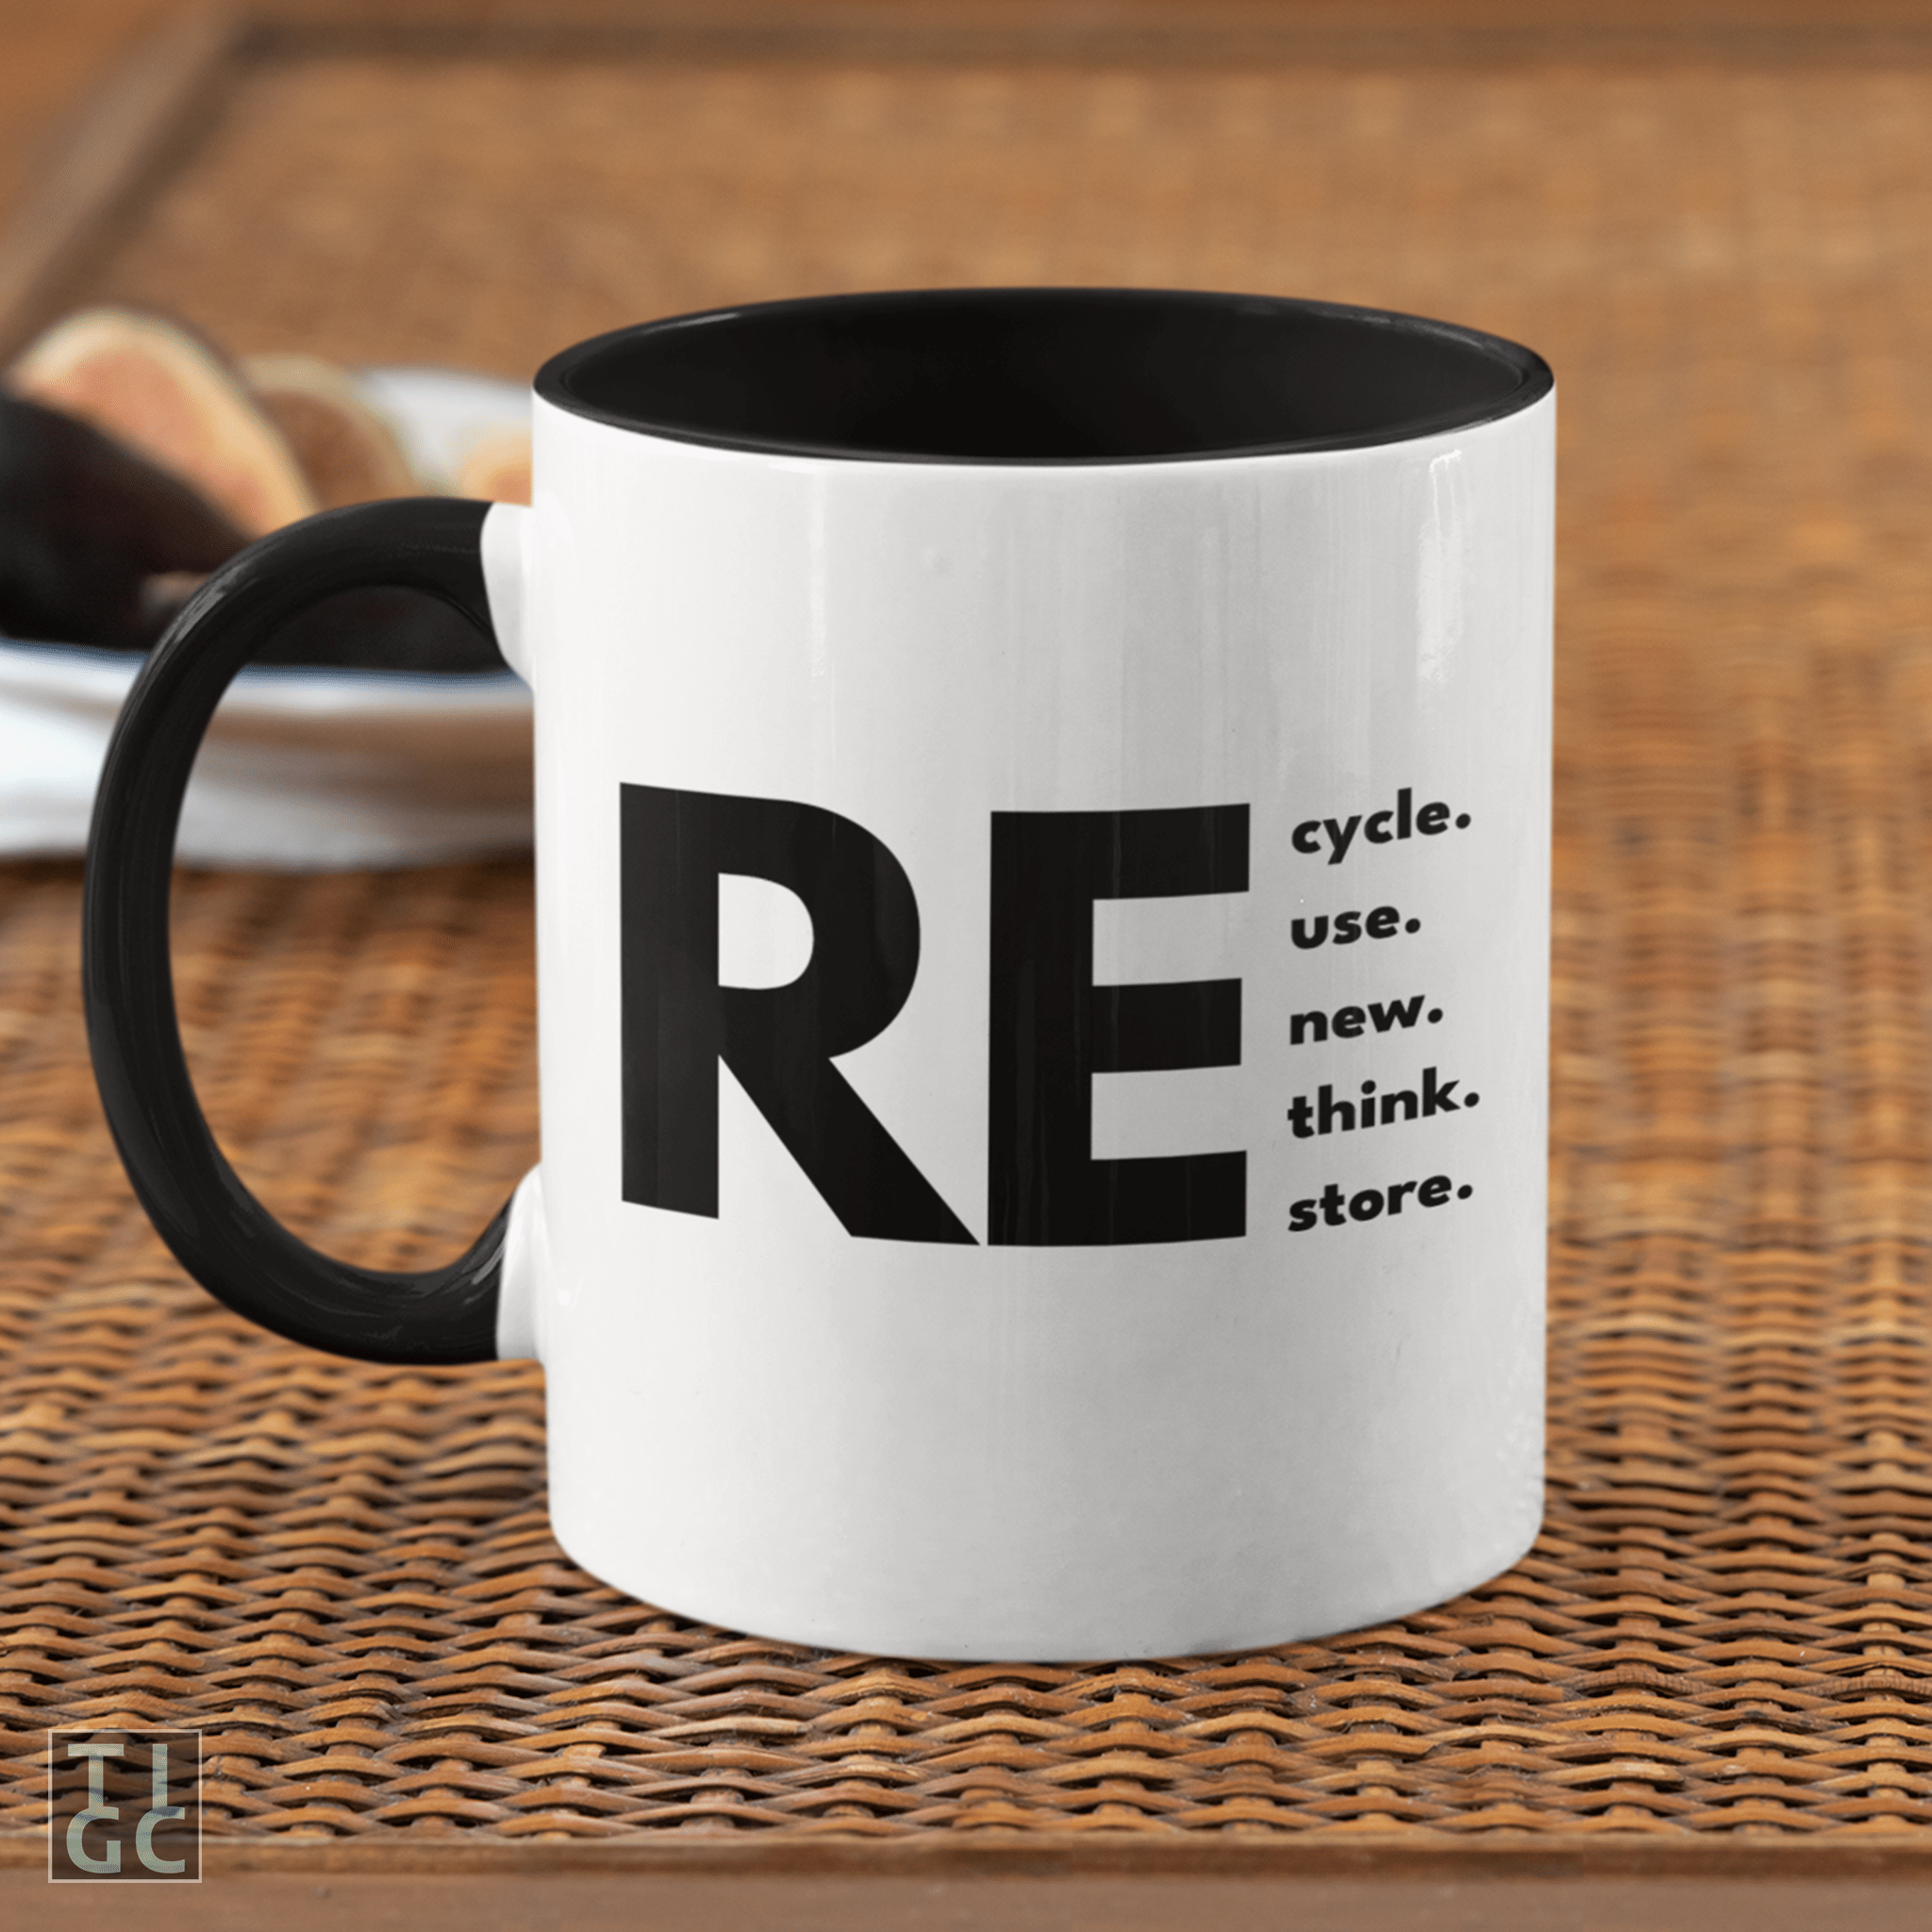 reduce reuse recycle Coffee Mug by kirkfromoklahoma